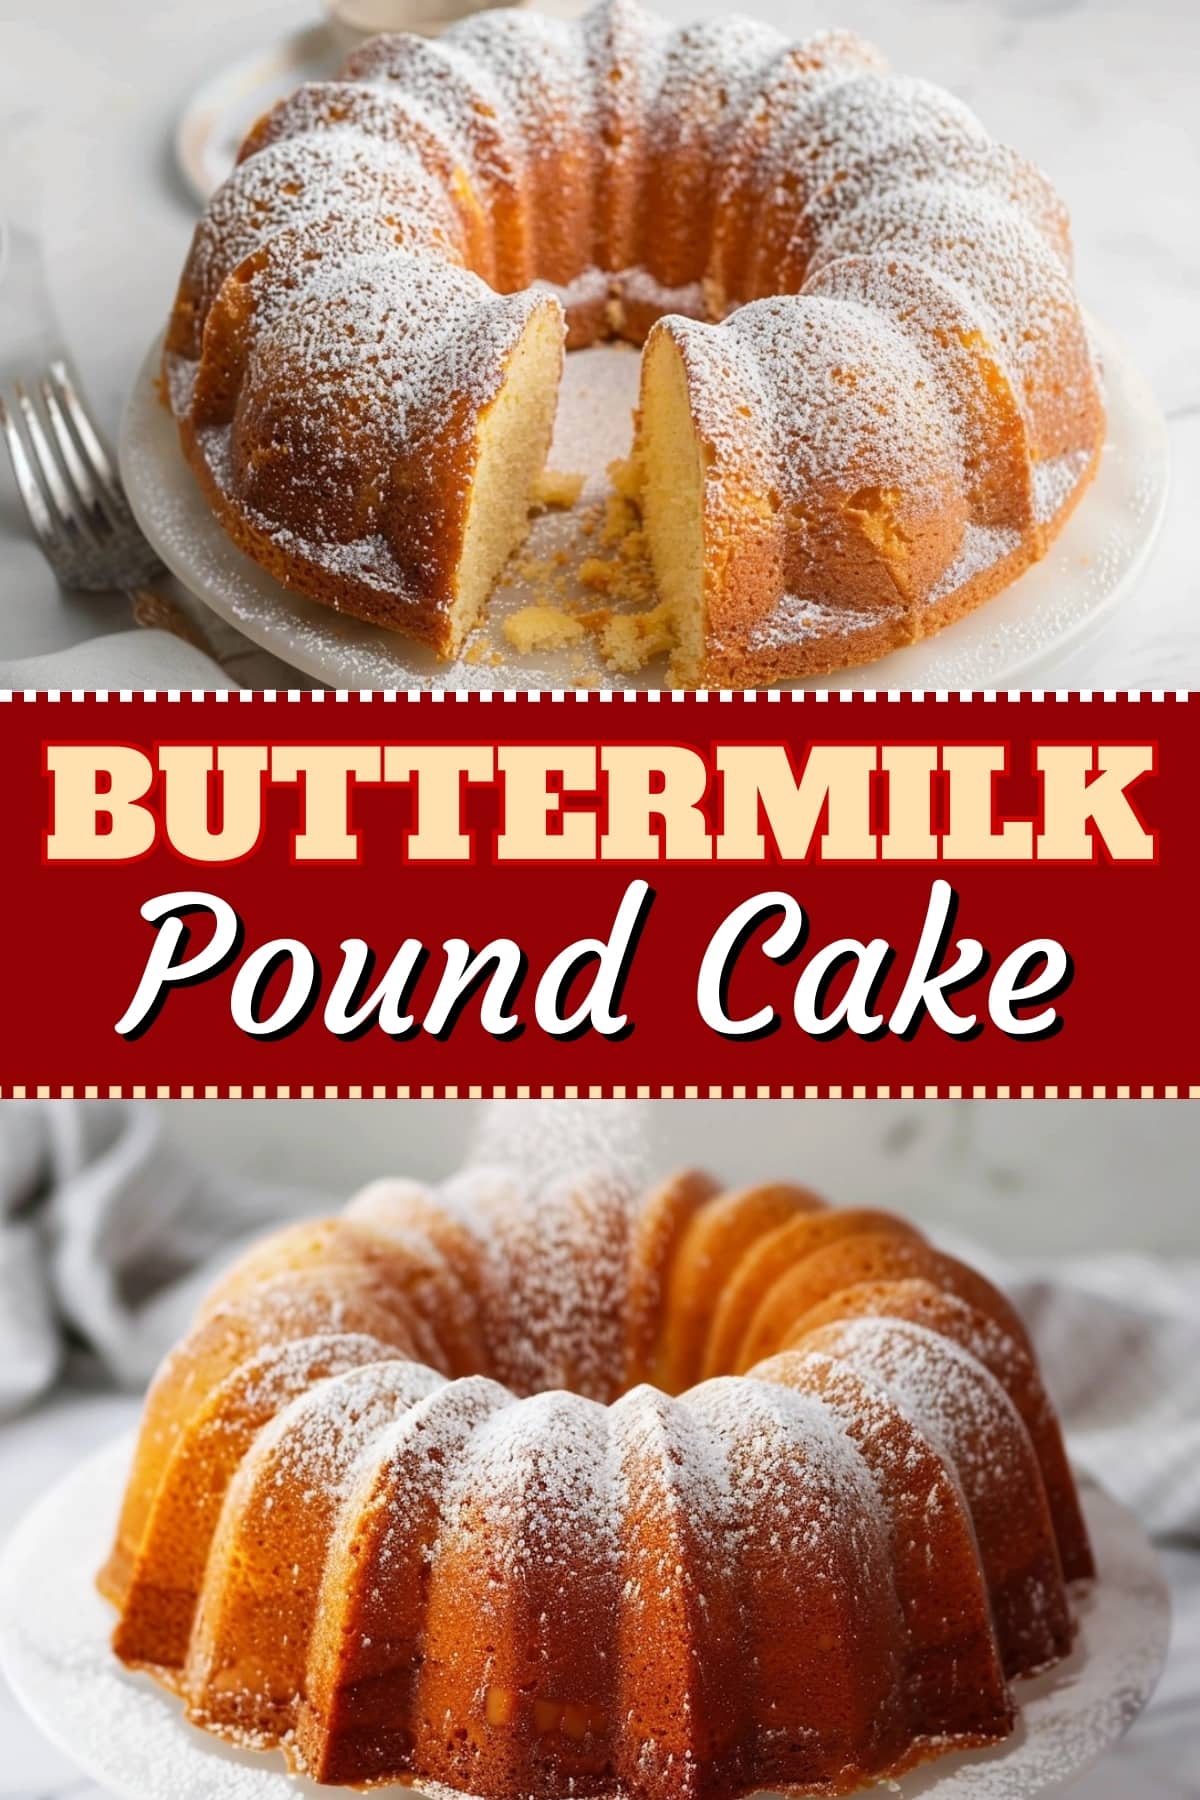 Buttermilk pound cake.